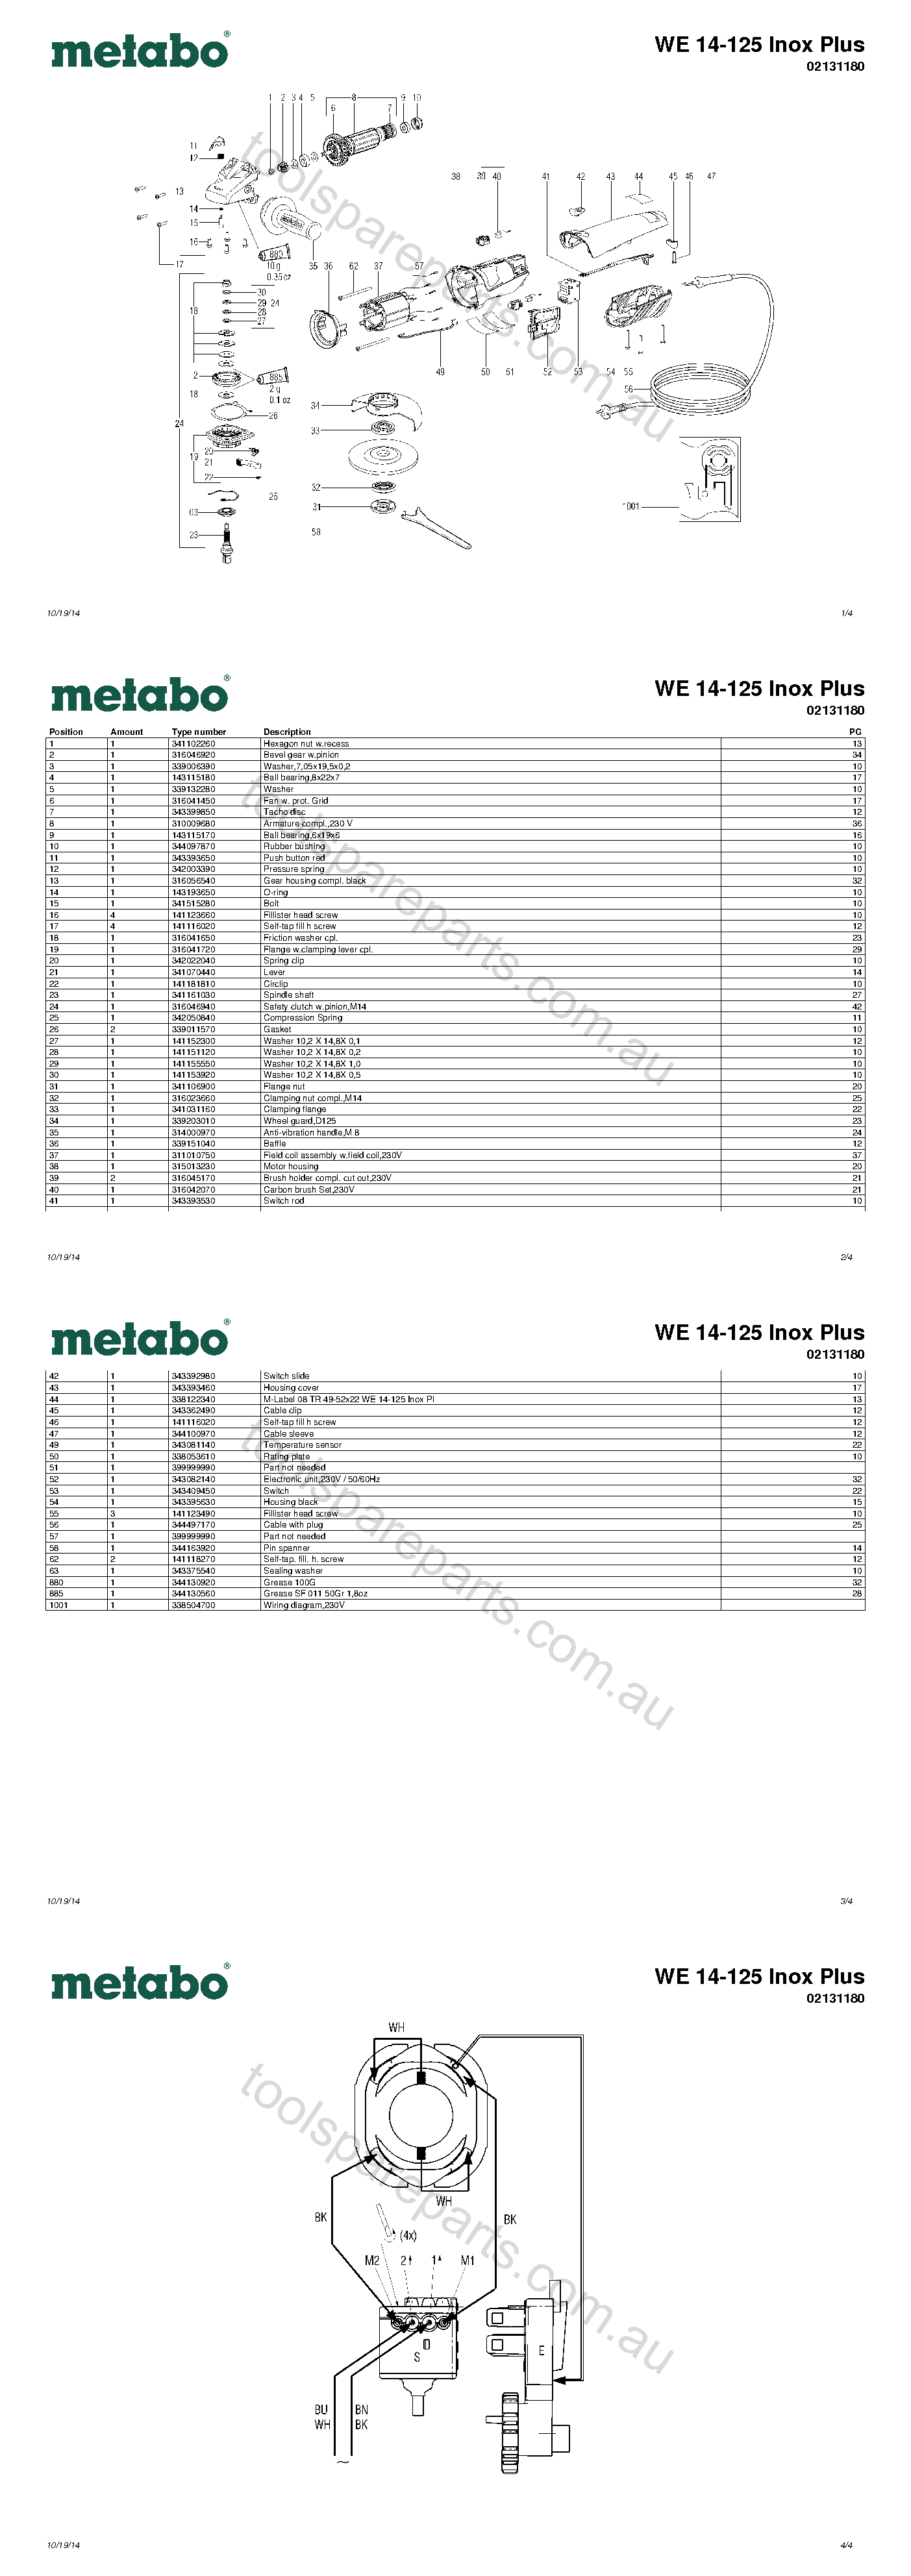 Metabo WE 14-125 Inox Plus 02131180  Diagram 1